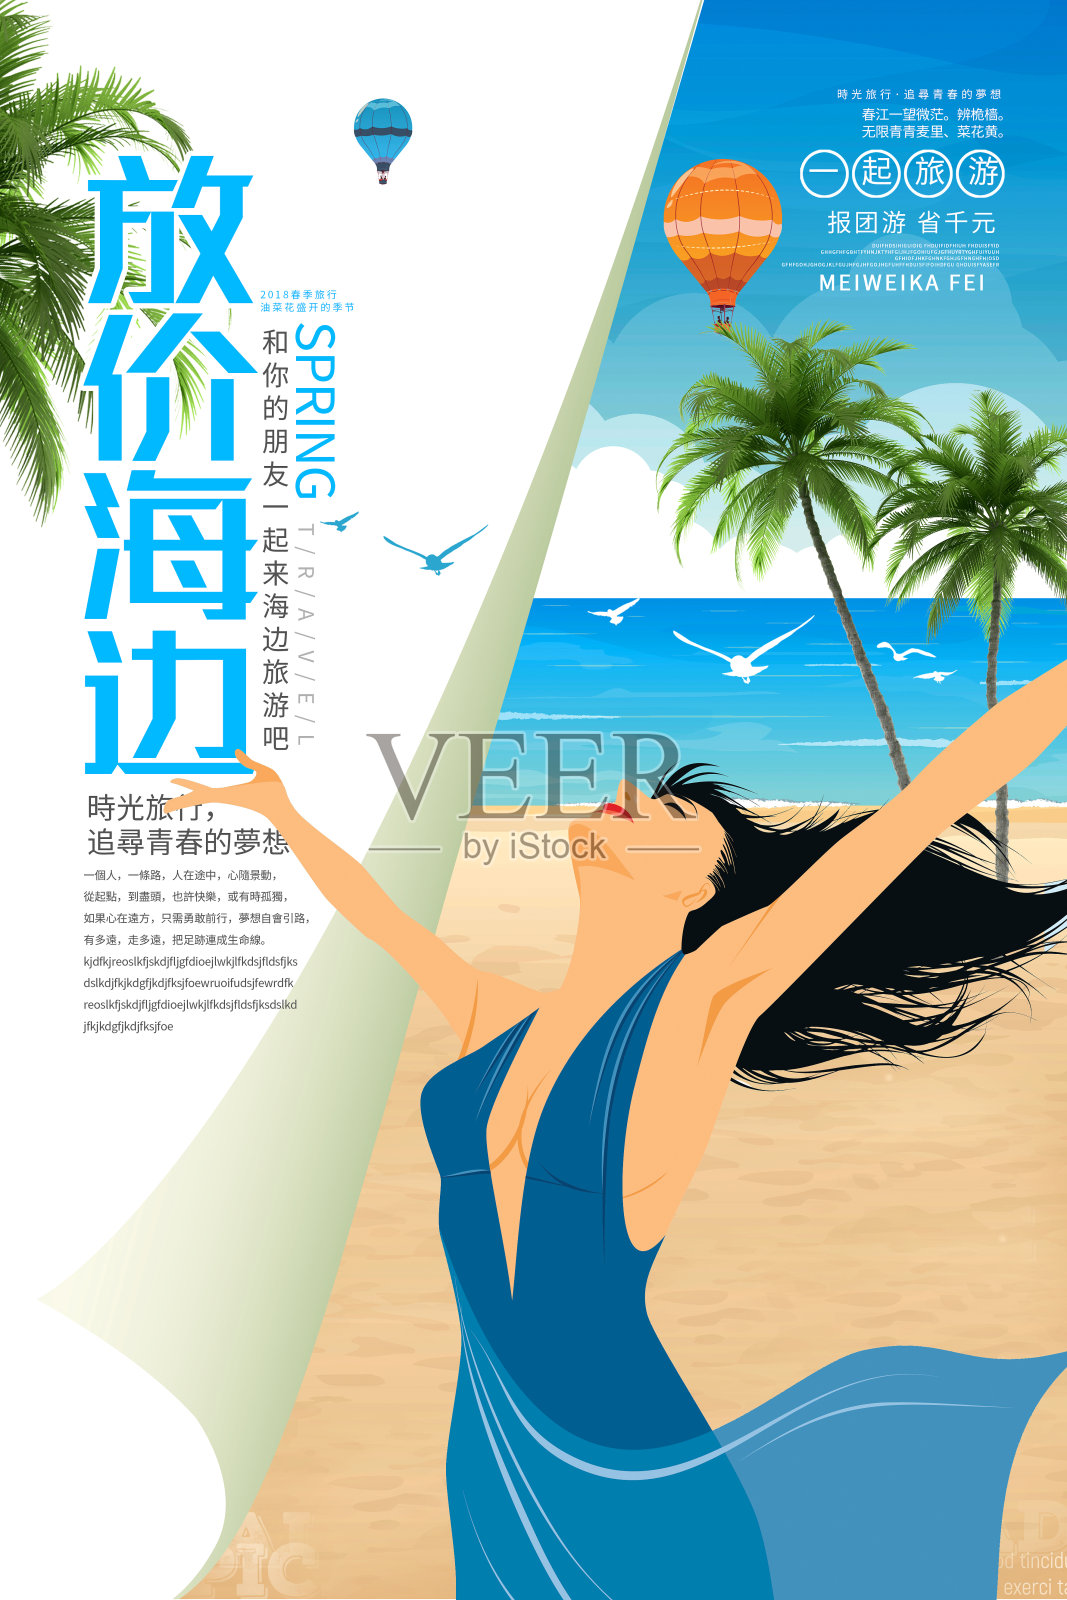 创意放价海边旅游宣传海报设计模板素材